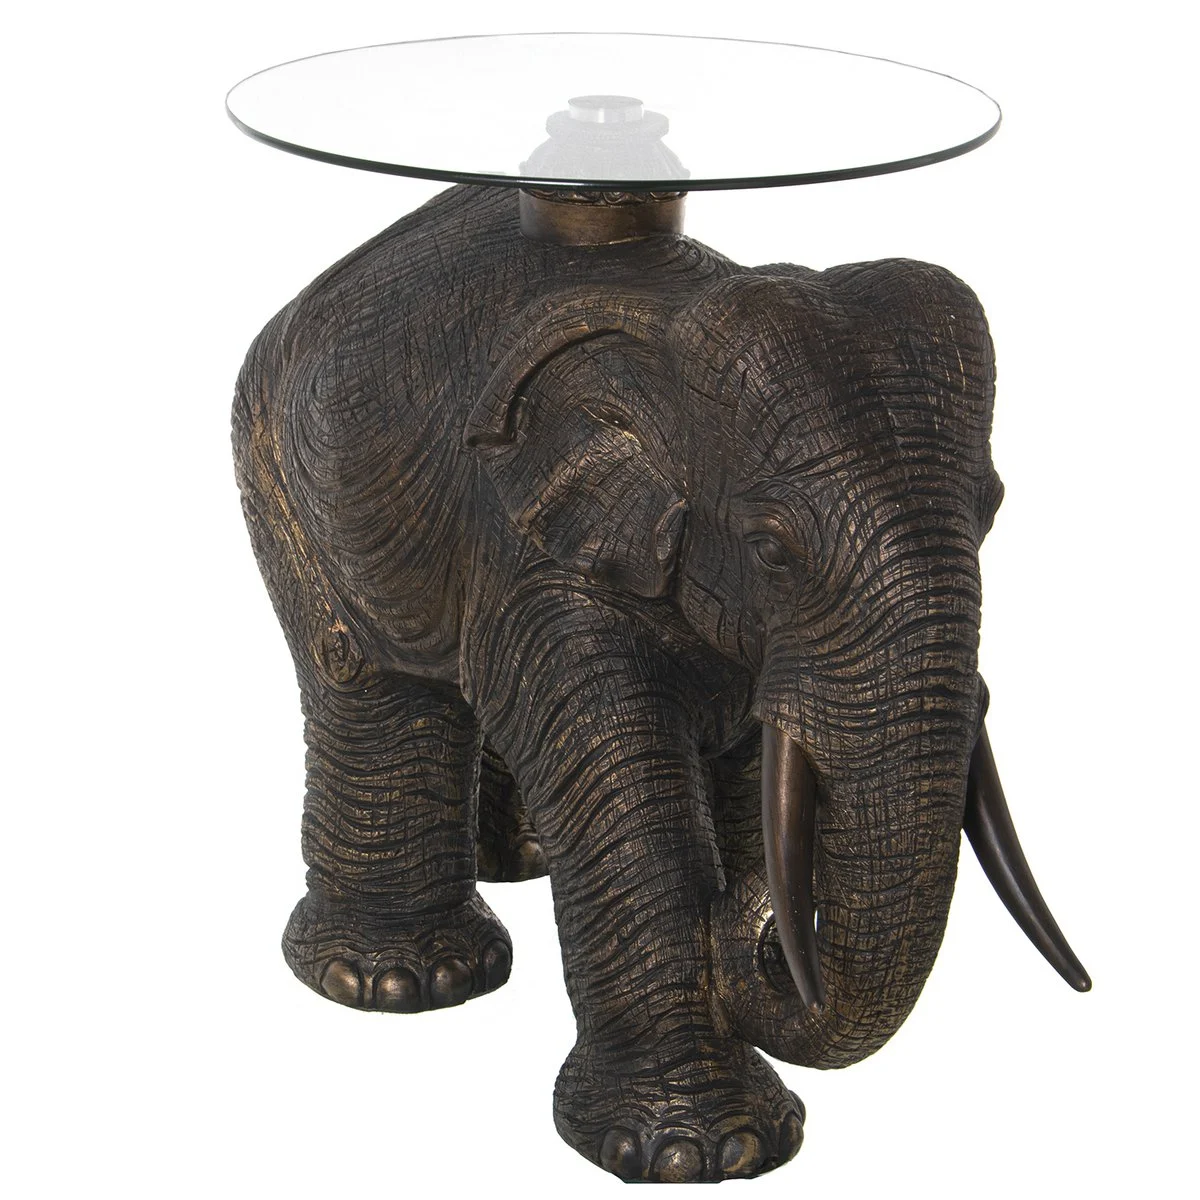 Exclusieve salontafel olifant, tafel als olifant, echte eye-catcher!